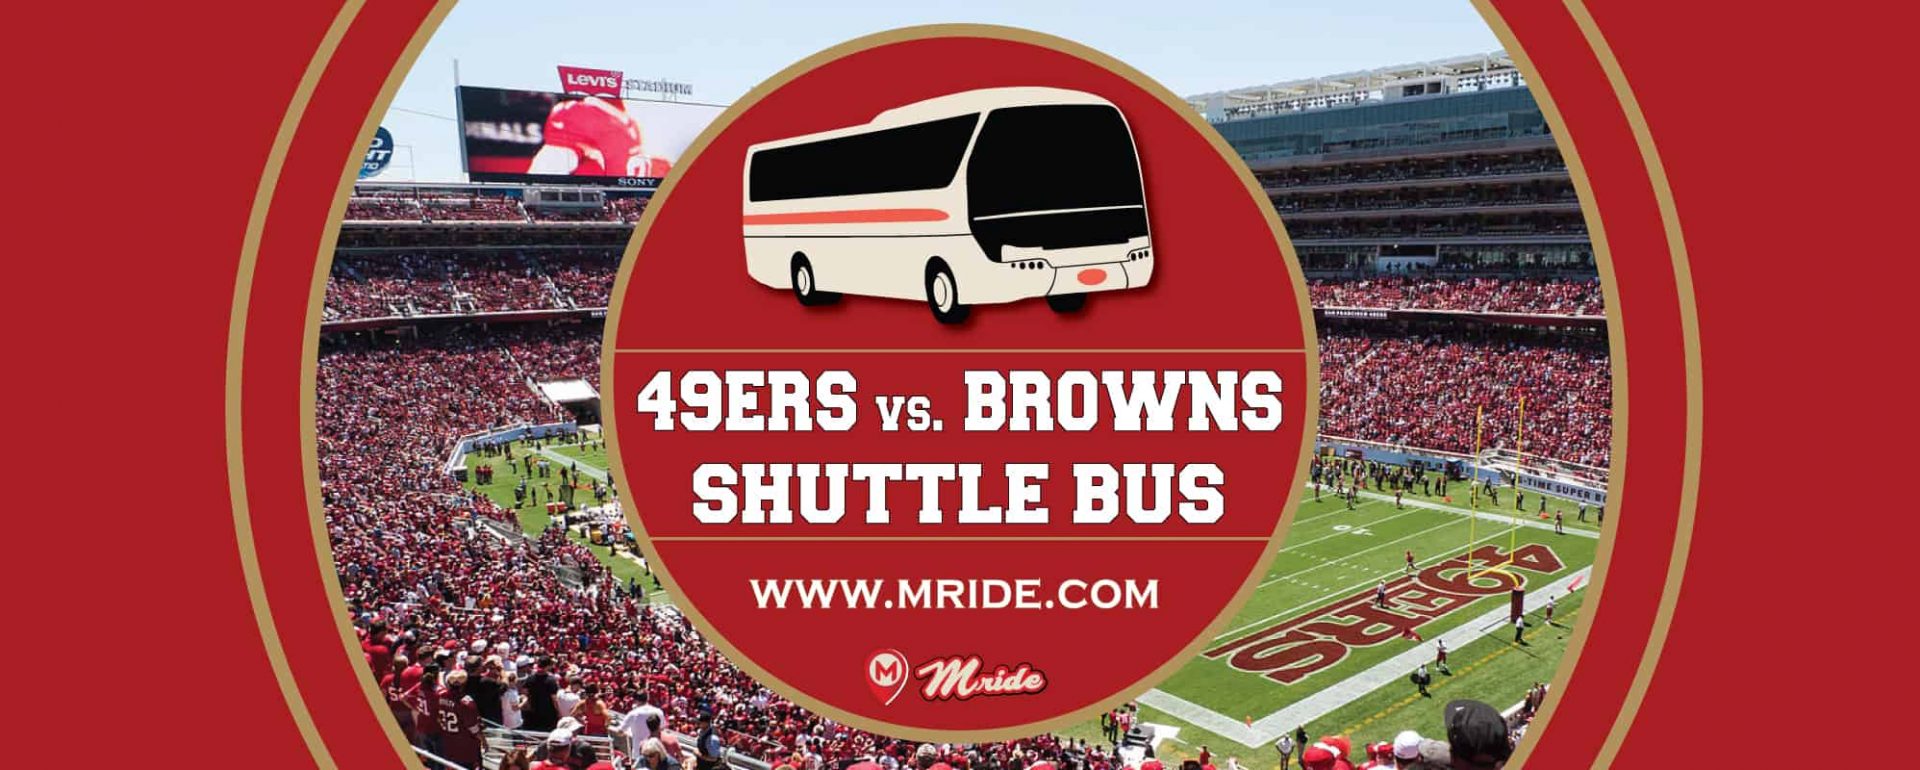 49ers vs. Browns Shuttle Bus